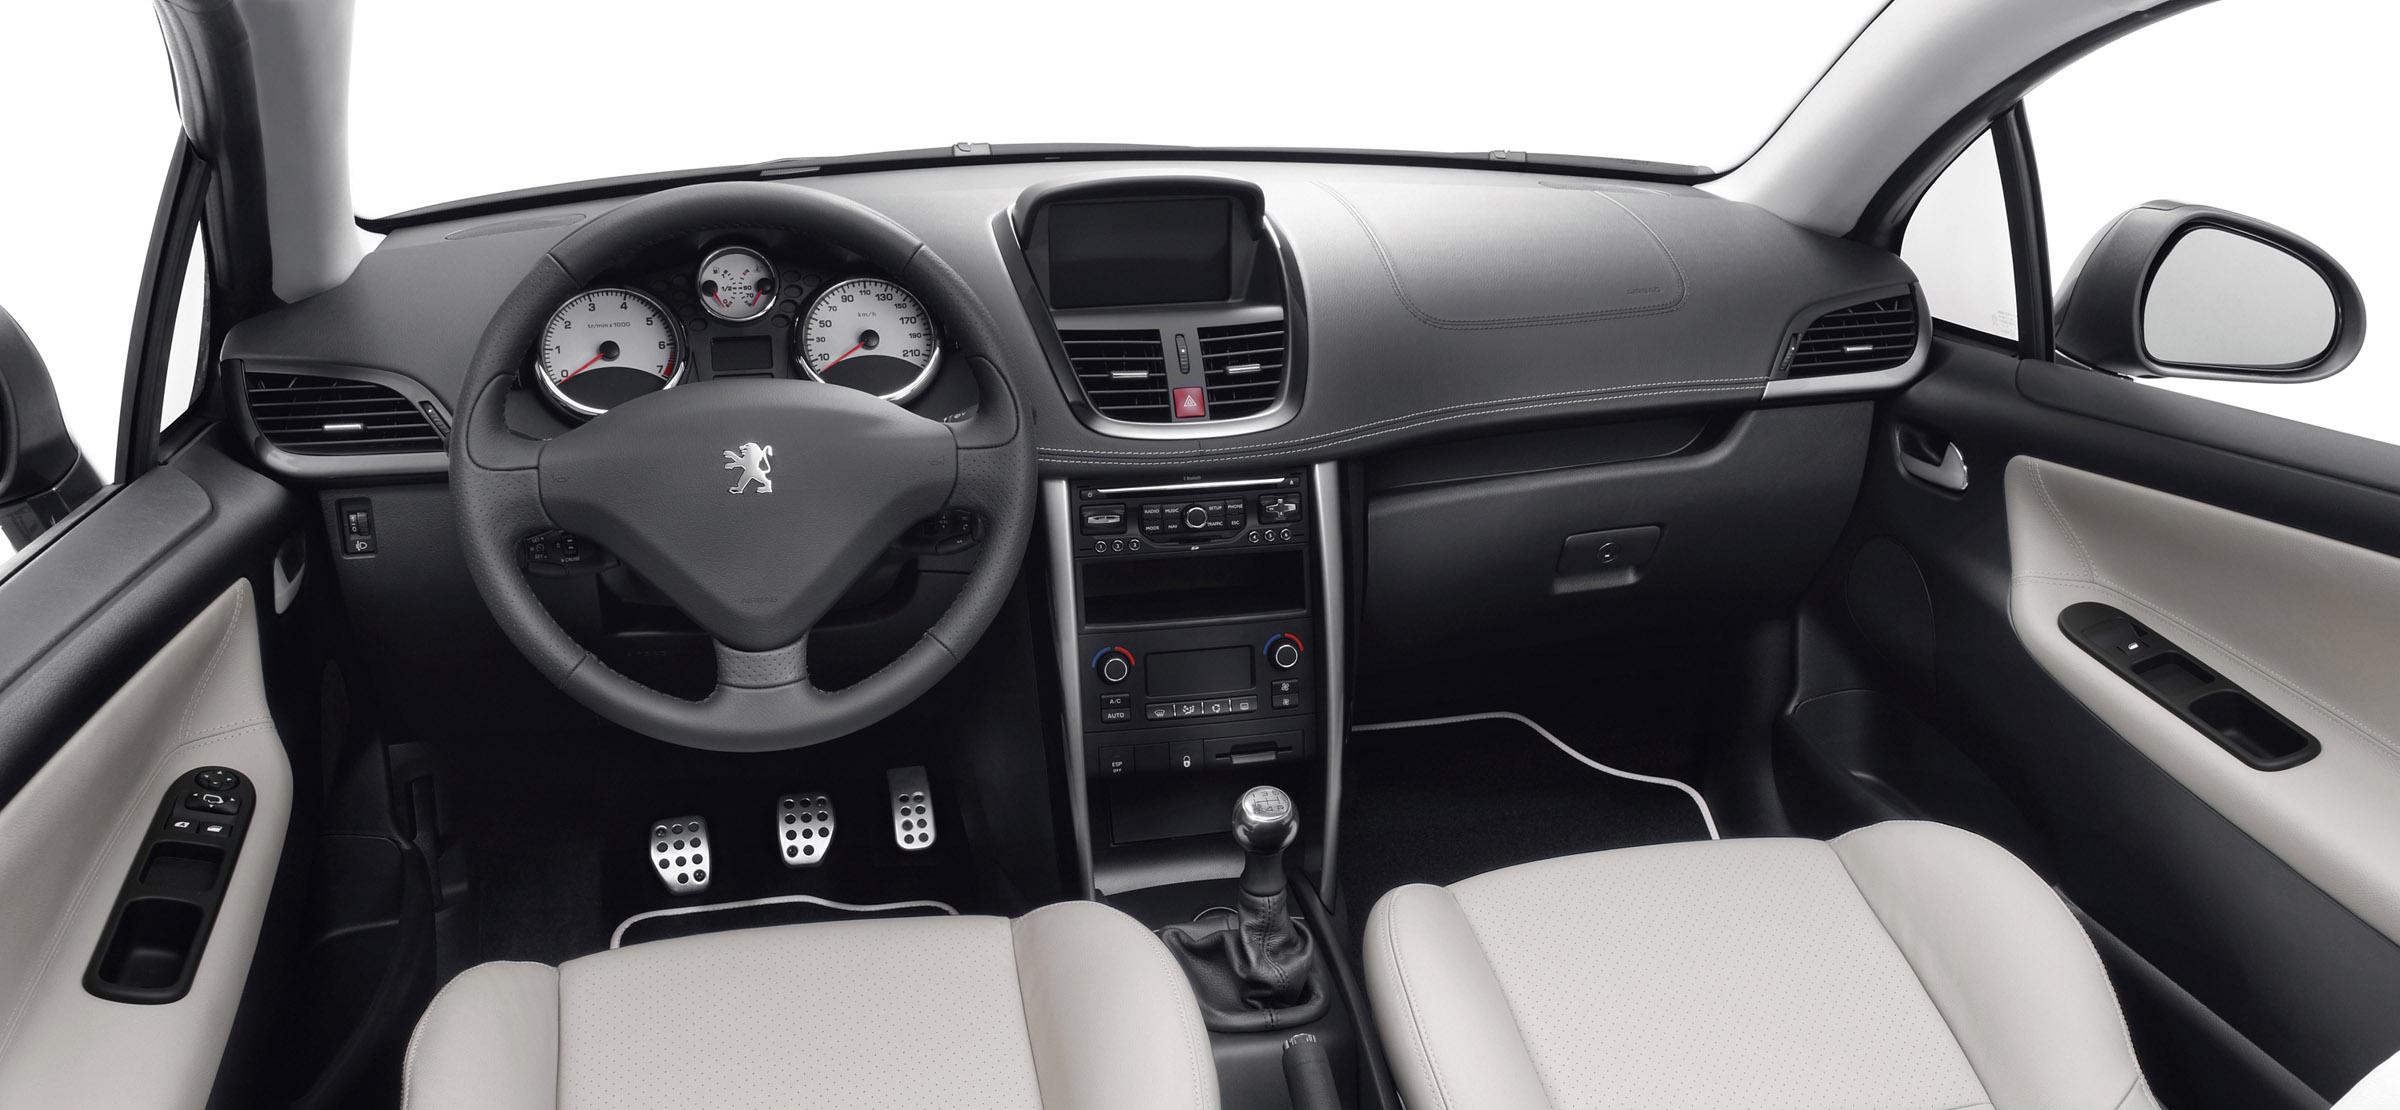 Peugeot 207 I Restyling 2009 - 2015 Cabriolet #6